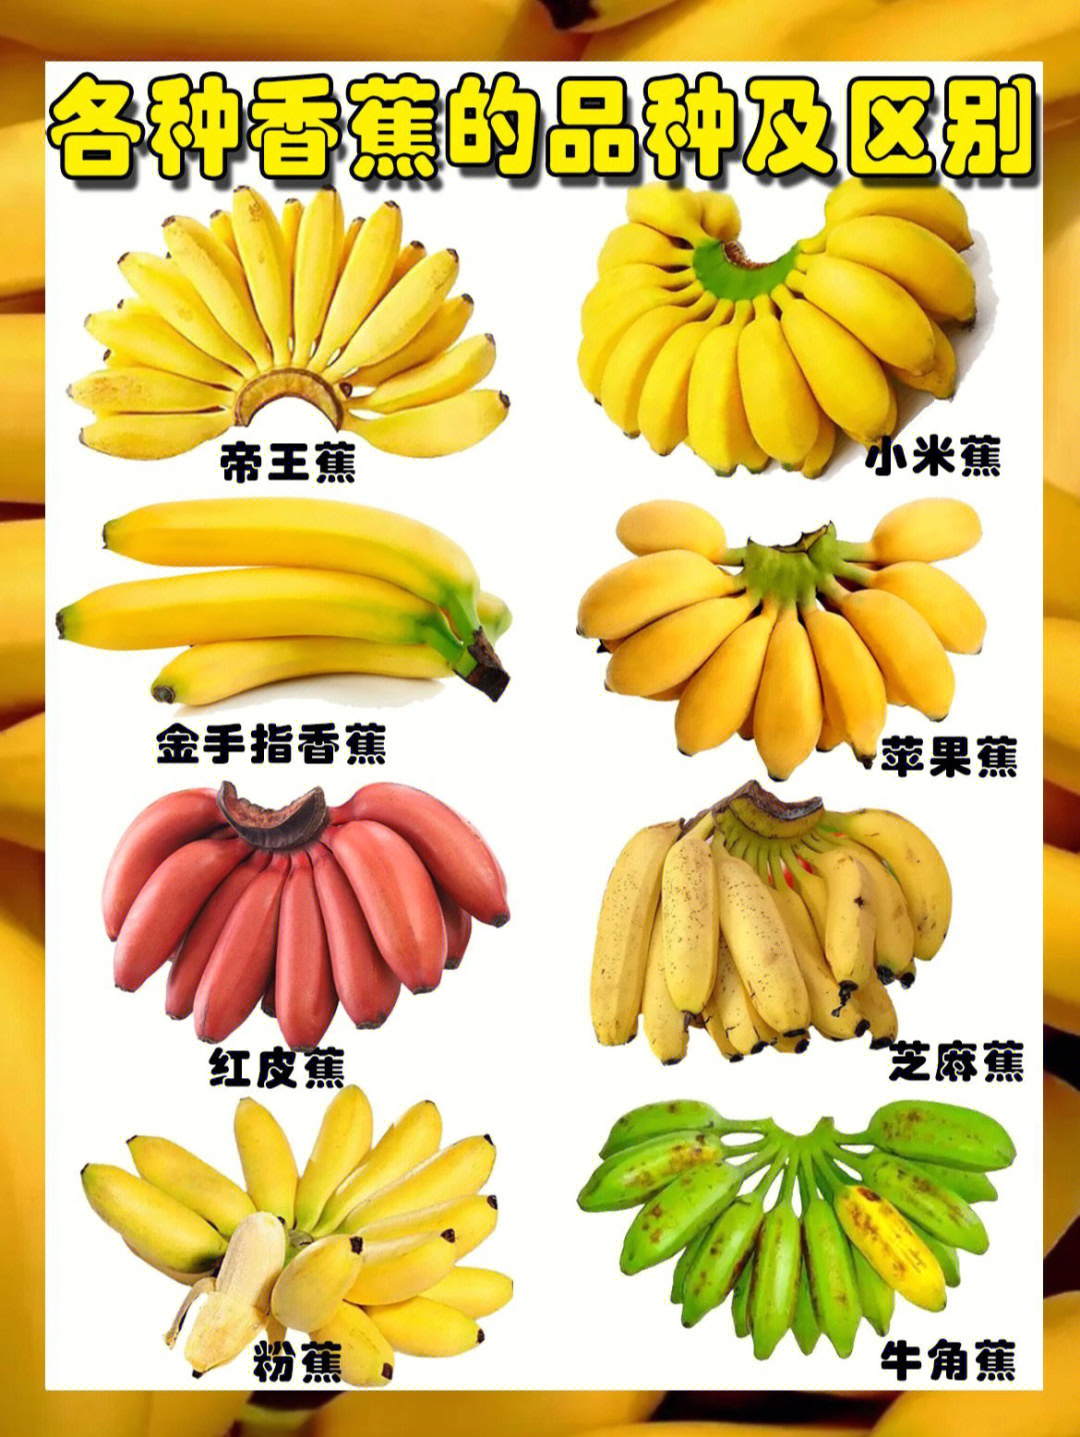 香蕉的品种及分类